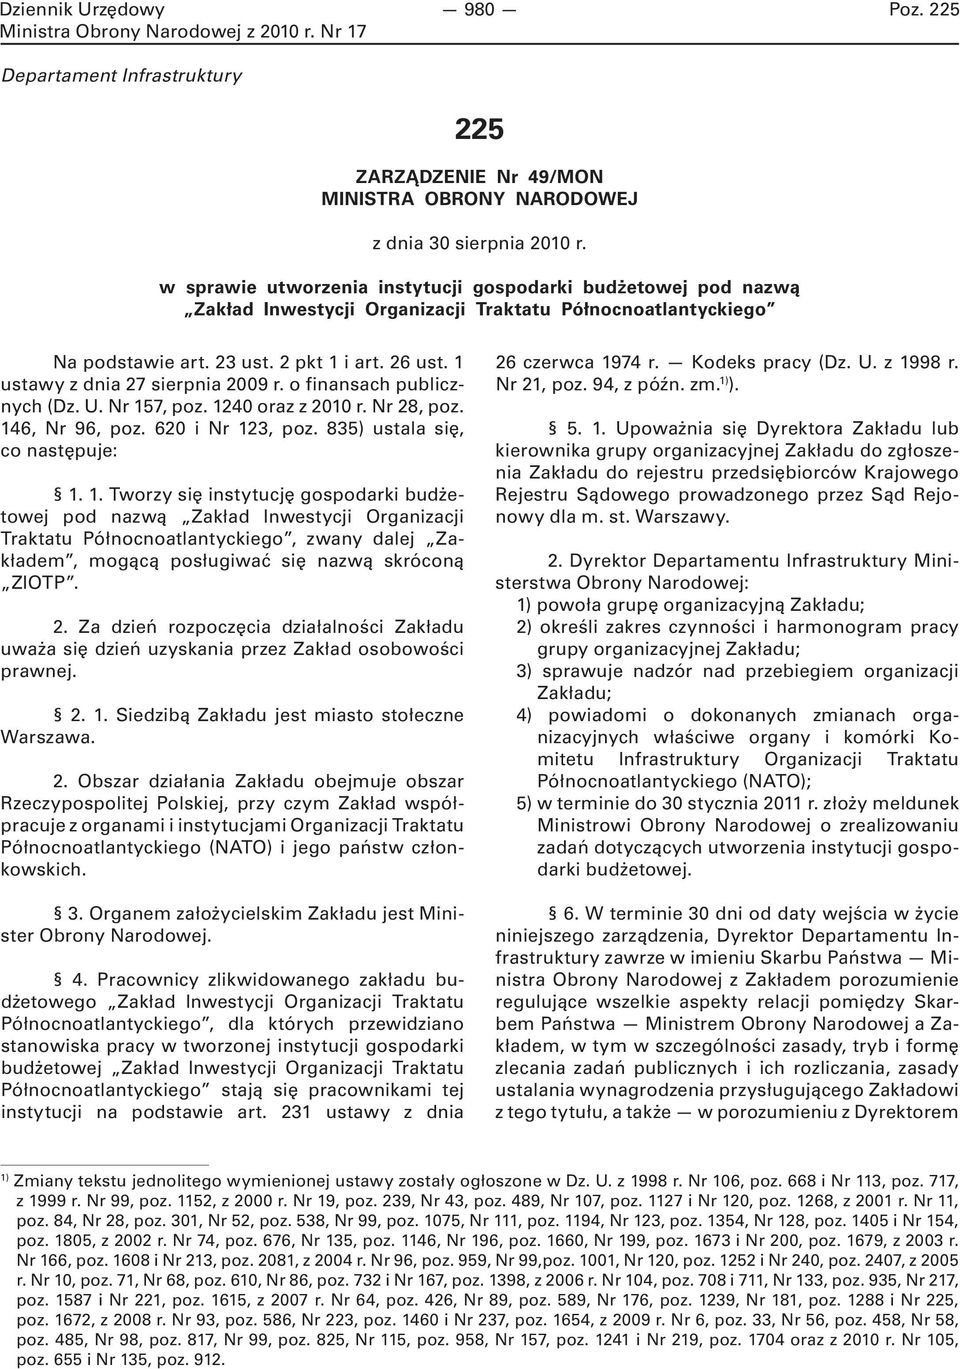 1 ustawy z dnia 27 sierpnia 2009 r. o finansach publicznych (Dz. U. Nr 15